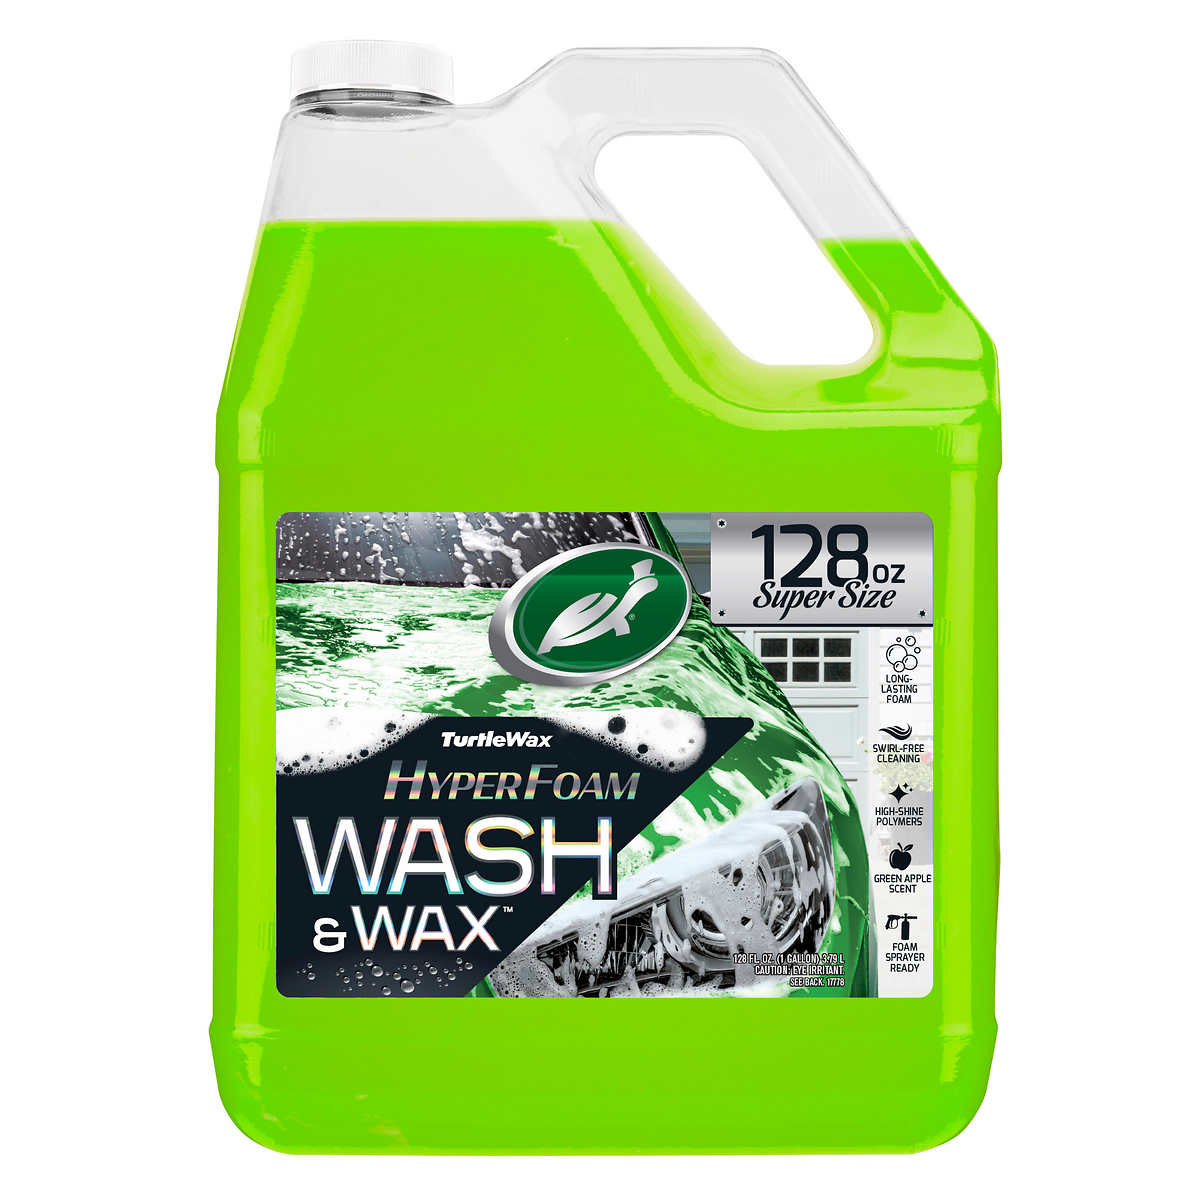  Turtle Wax T-149R Car Wash - 100 oz. : Automotive